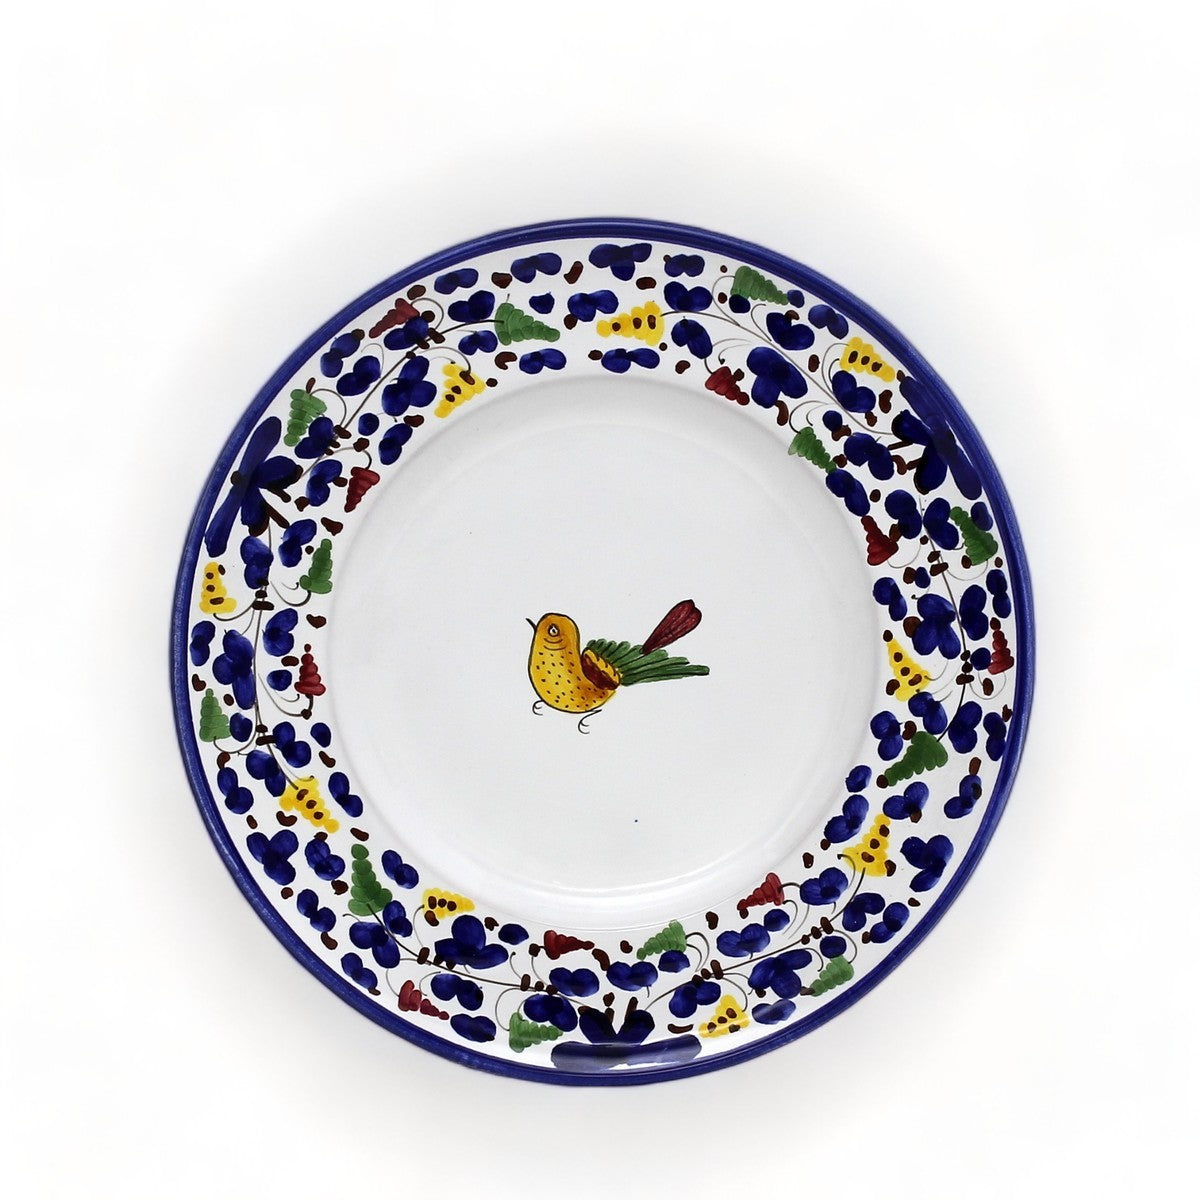 ARABESCO BLUE DERUTA: Salad/Dessert Plate